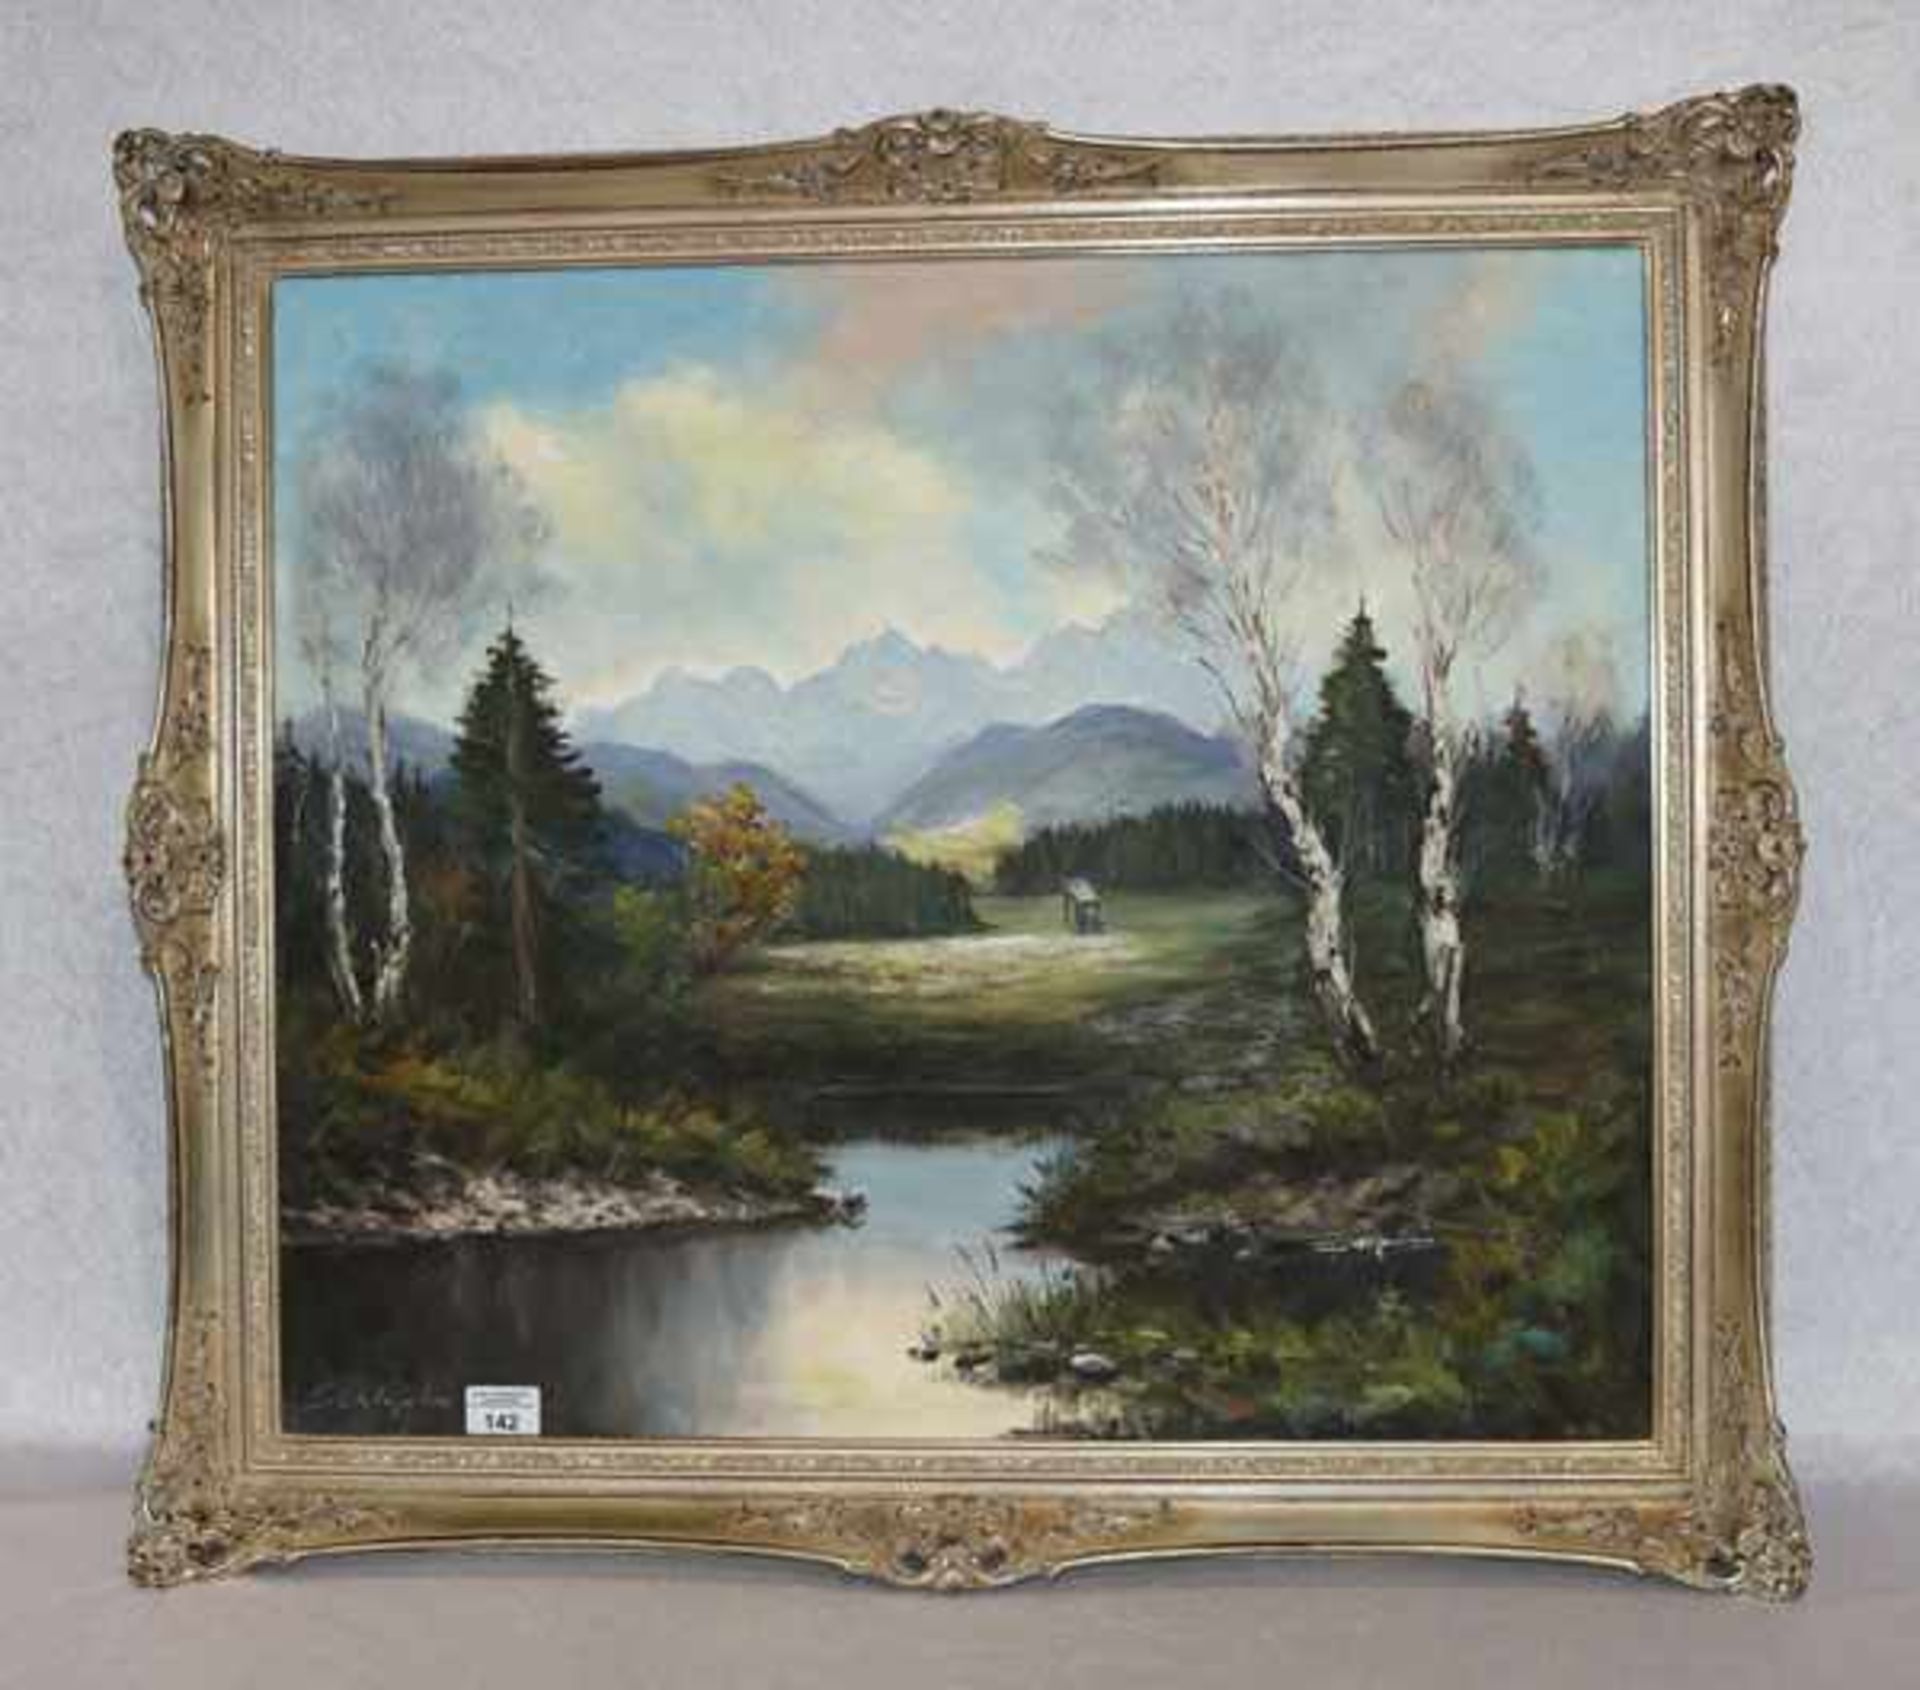 Gemälde ÖL/LW 'Murnauer Moor mit Wettersteingebirge', signiert Schlagek ?, gerahmt, incl. Rahmen